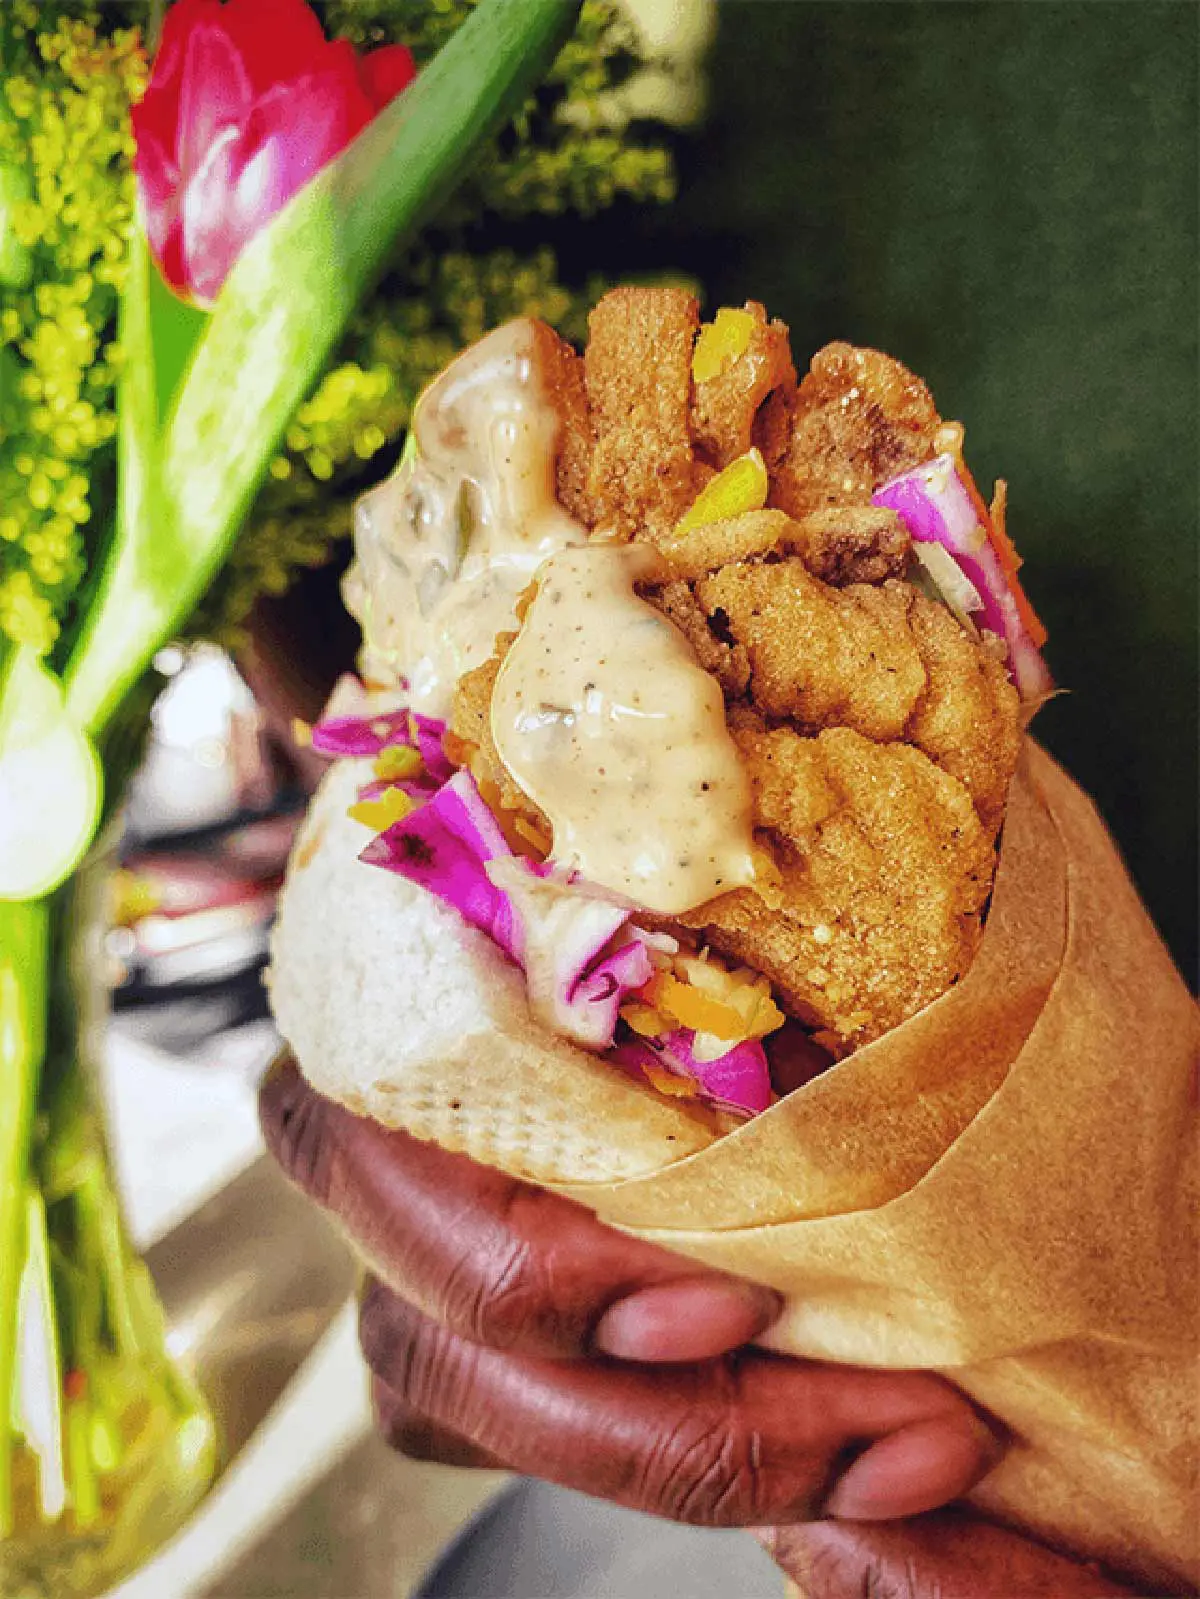 A hand holding a vegan o'boy sandiwich.